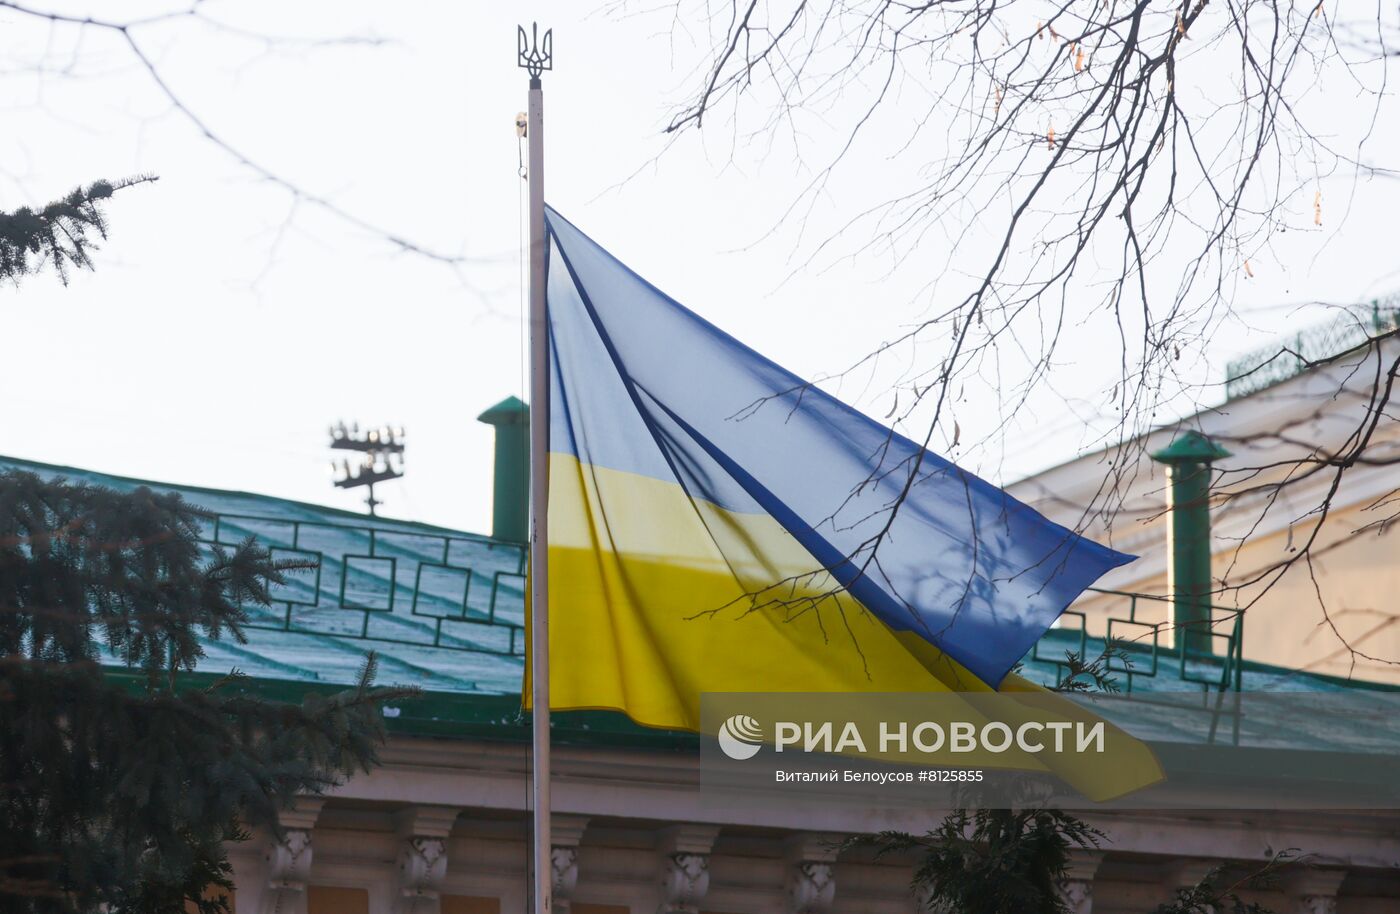 Ситуация у Посольства Украины в Москве